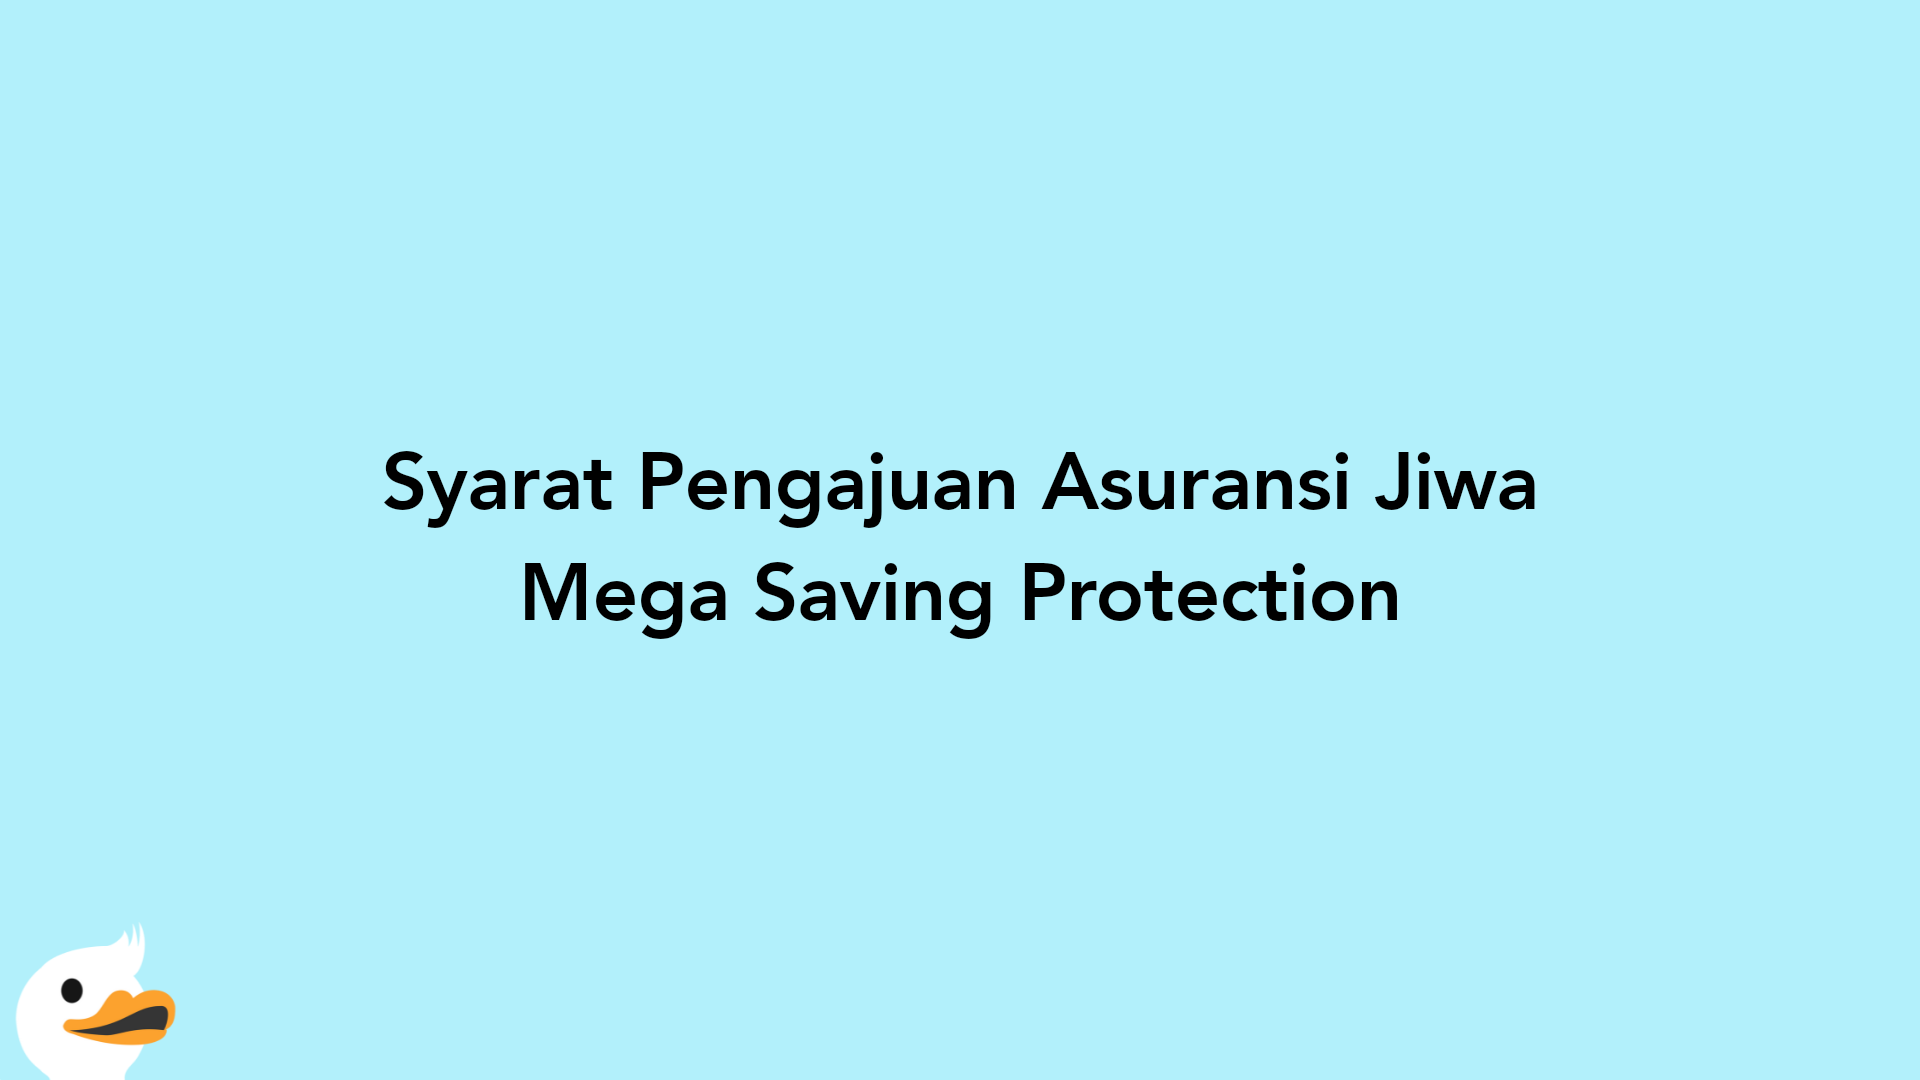 Syarat Pengajuan Asuransi Jiwa Mega Saving Protection